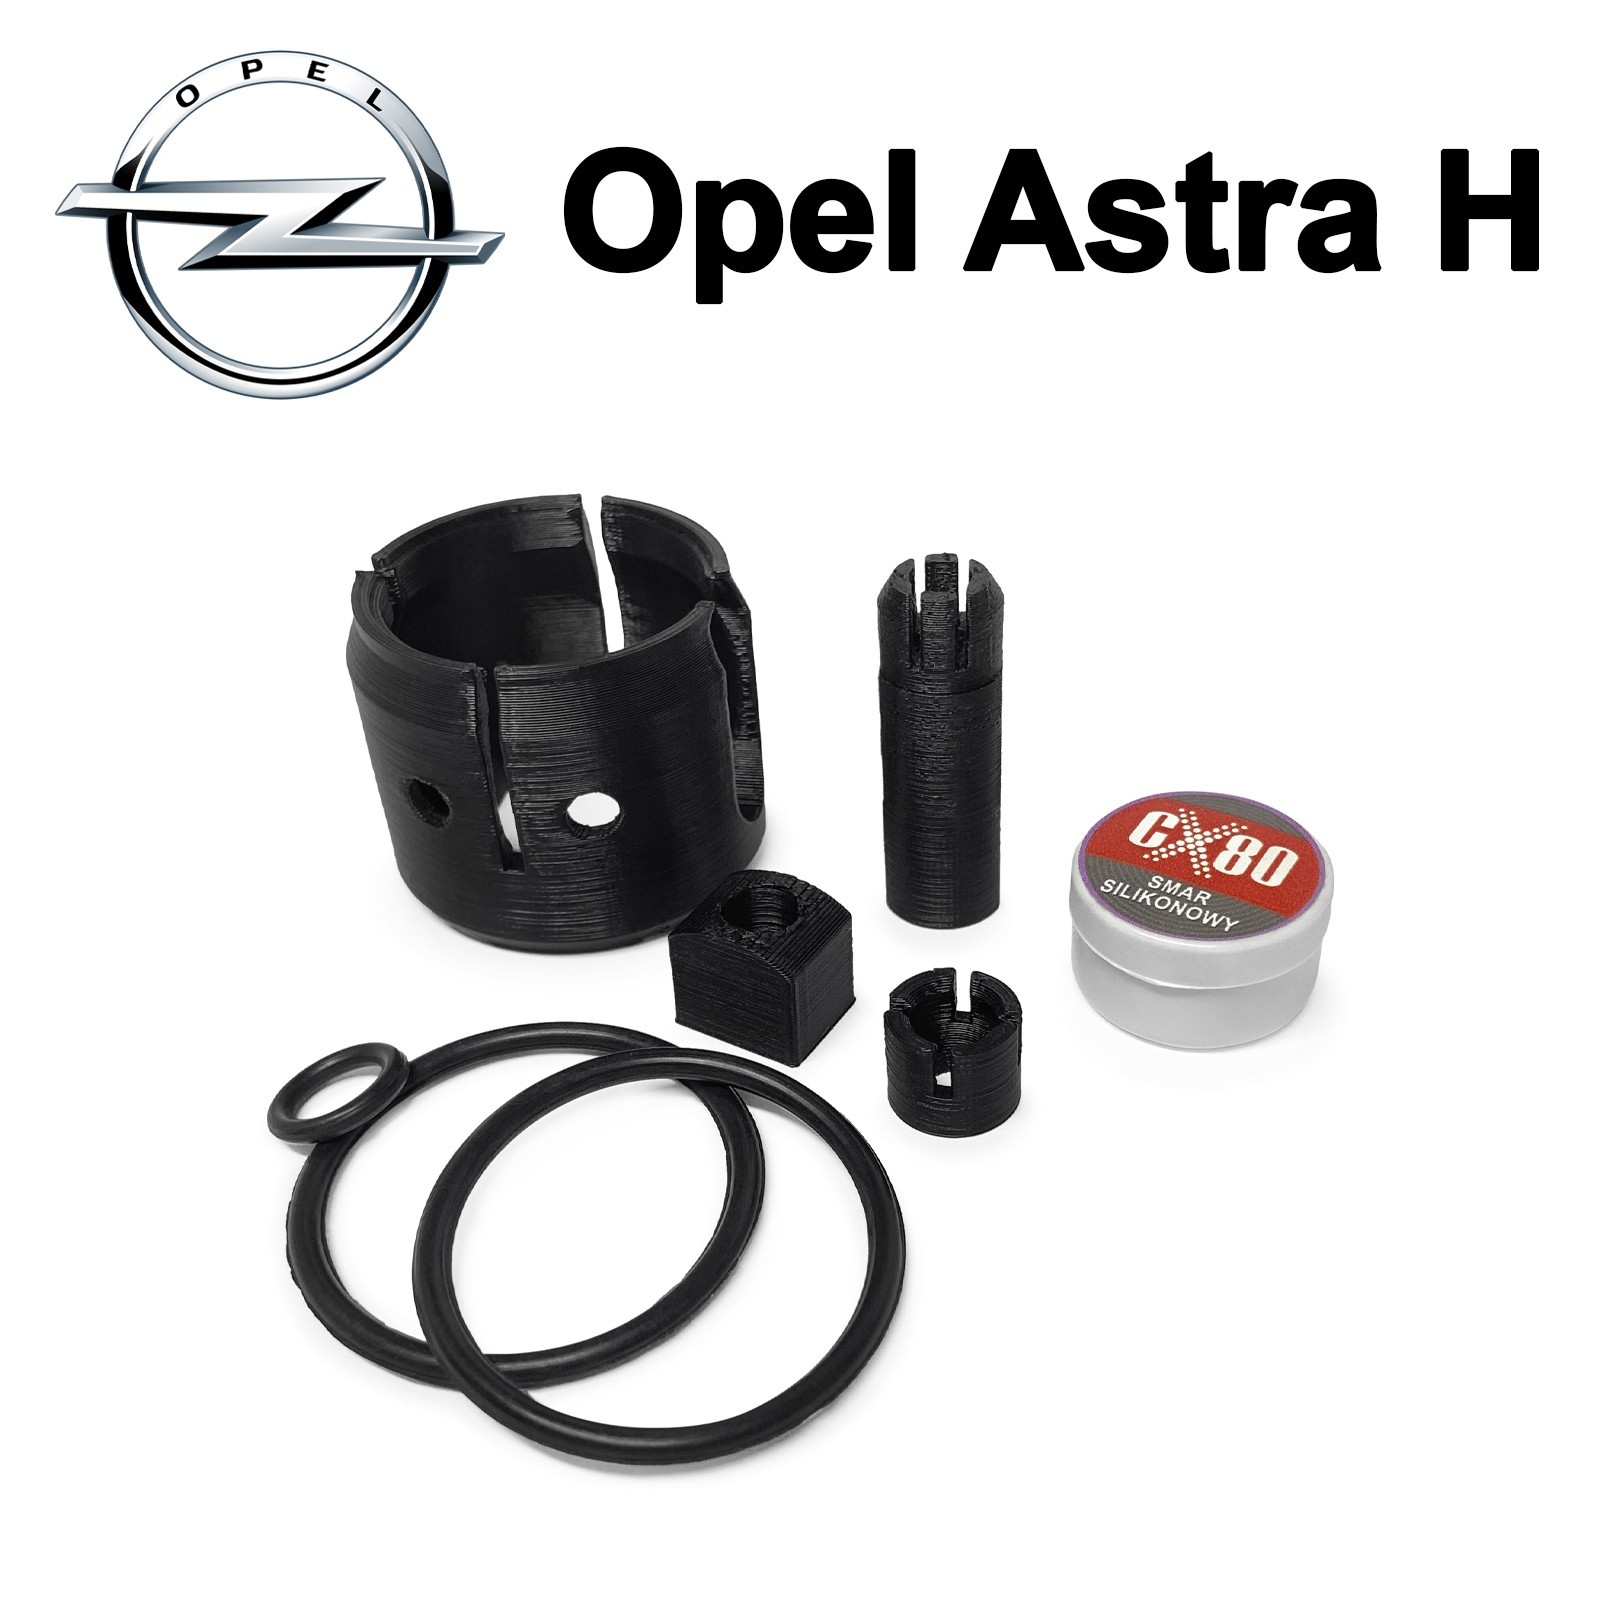 Кулиса Оpel Astra G (Опель Астра G) Ровно - Разборка Opel House